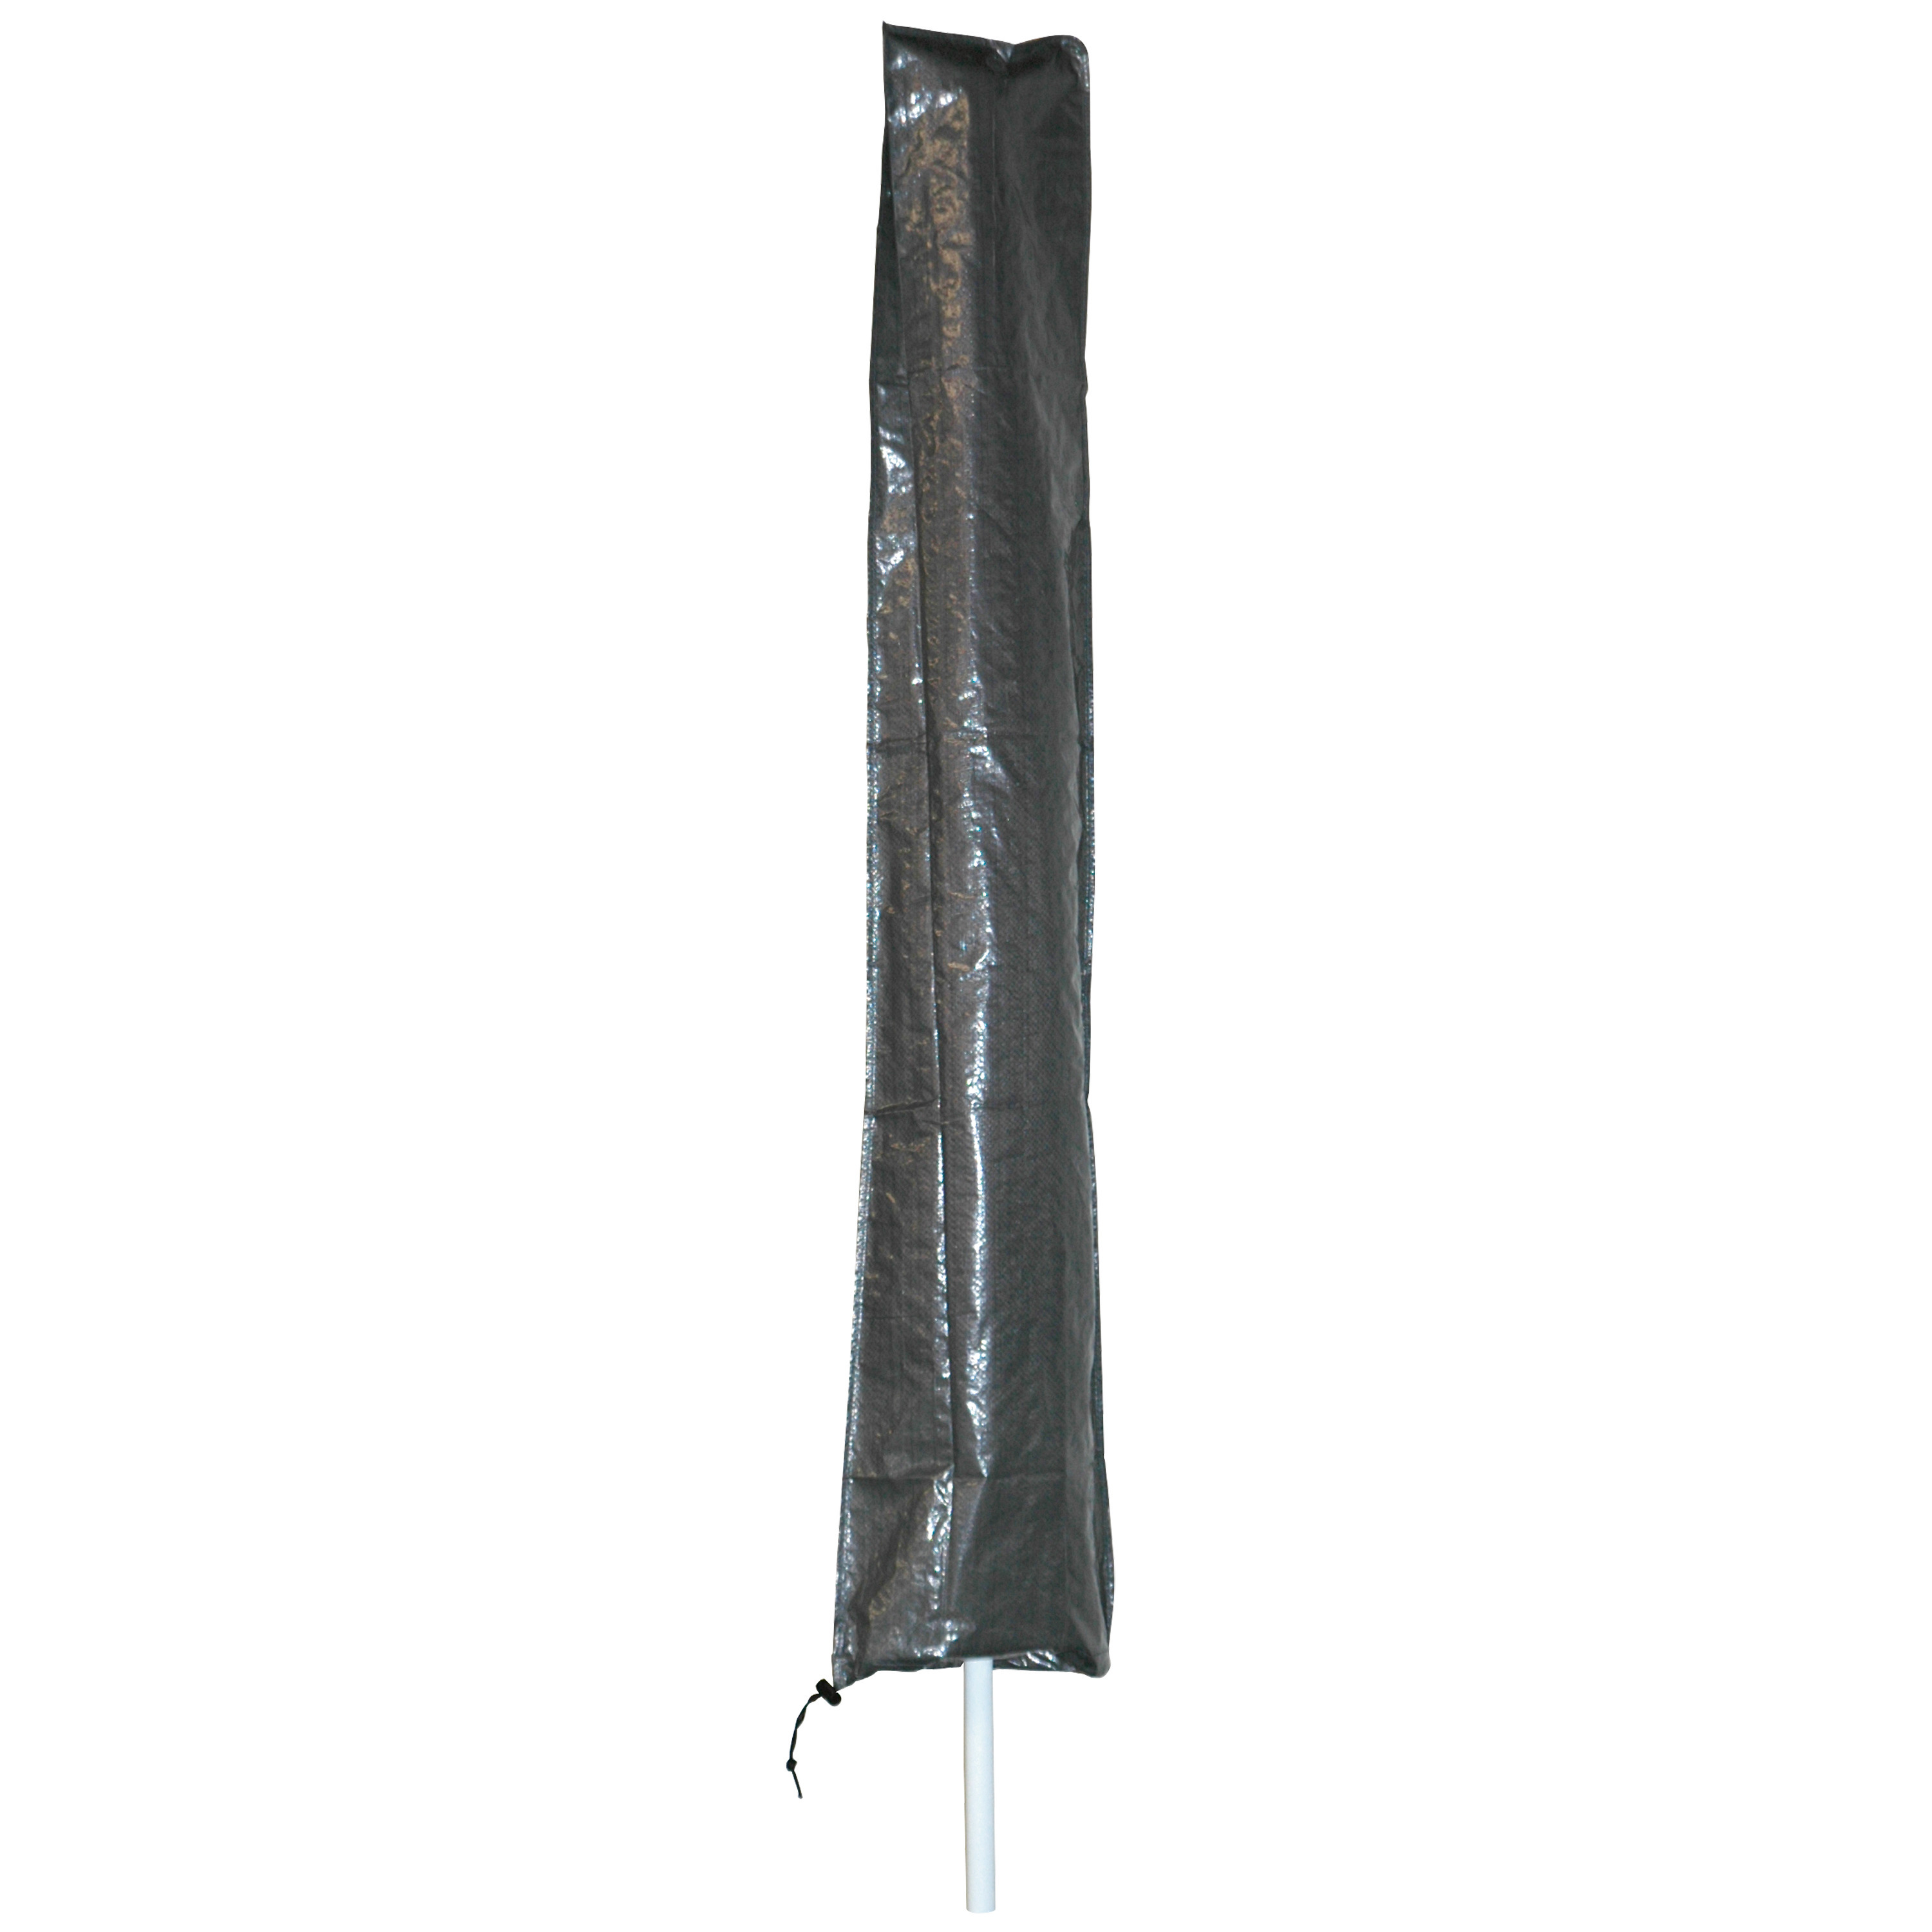 Afdekhoes / beschermhoes grijs voor parasols met een diameter van 2 m